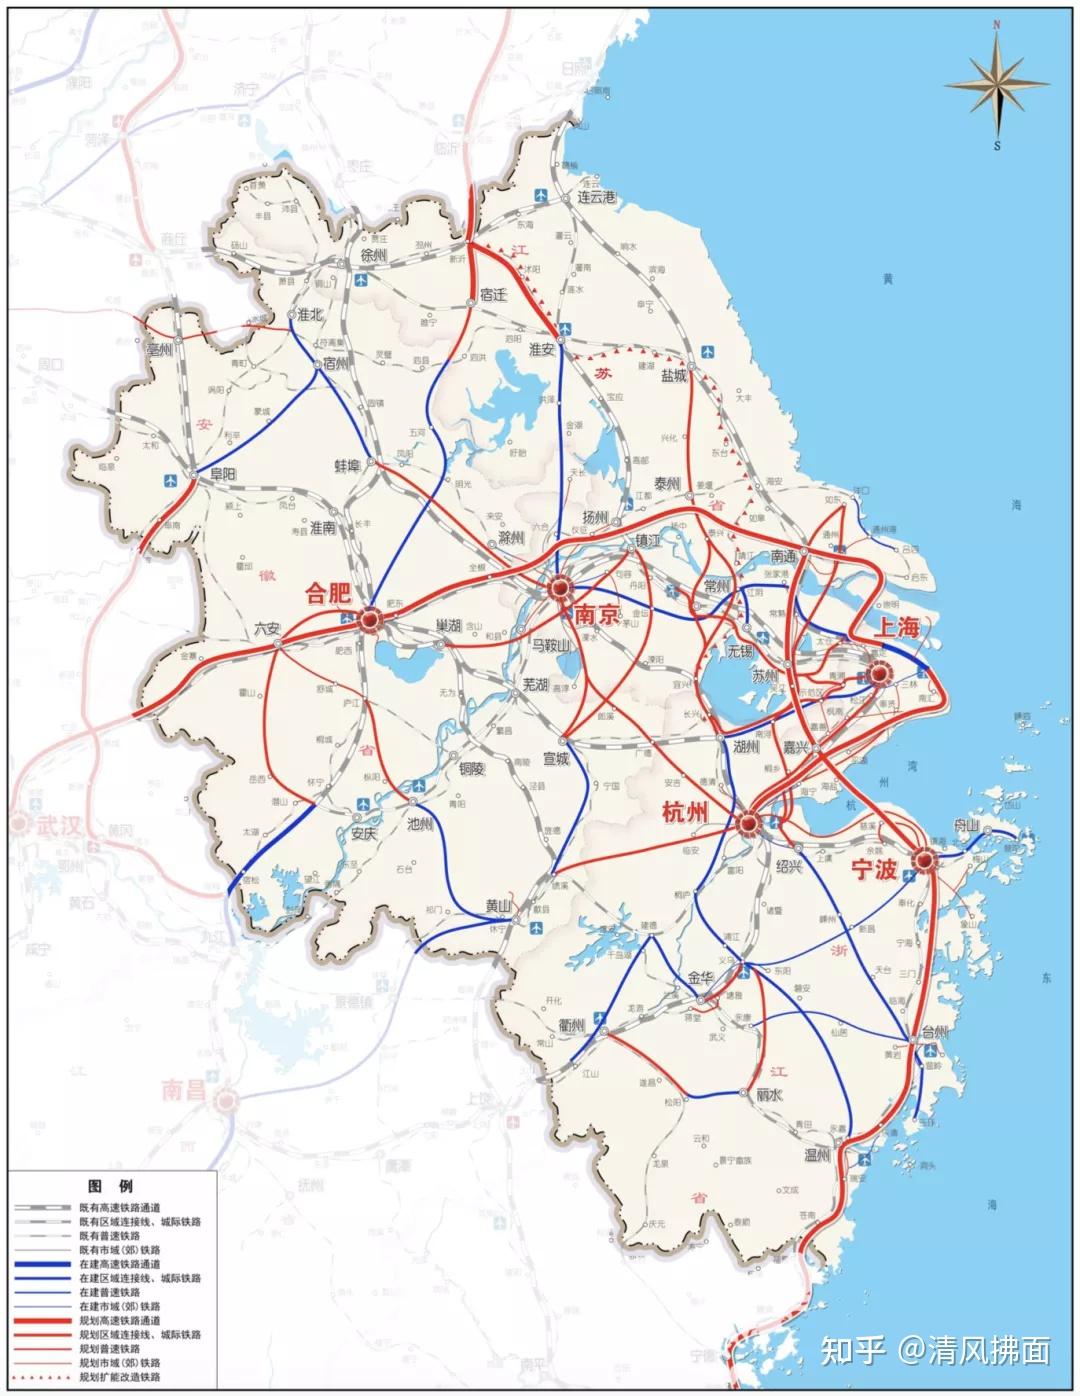 宁波杭州湾新区十四五规划及远景目标纲要重大交通篇